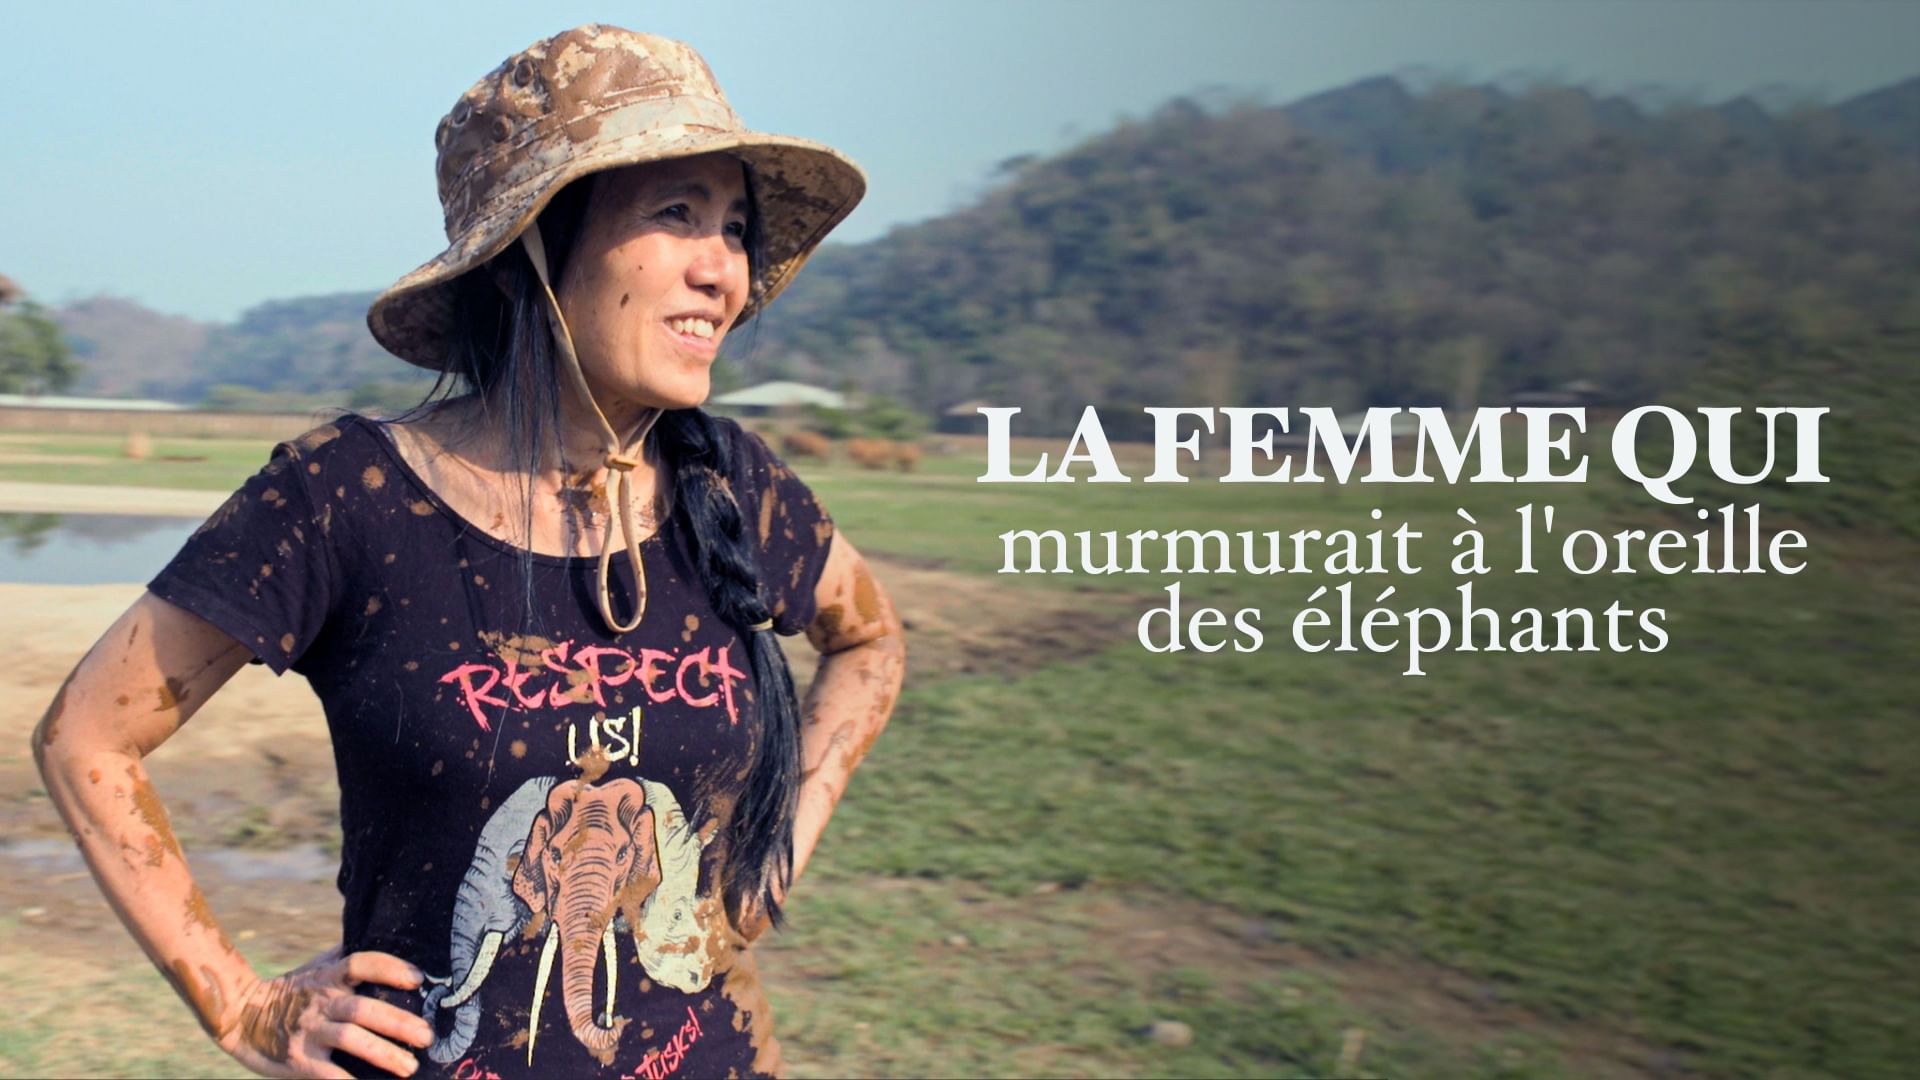 Lek Chailert, la femme qui murmurait à l’oreille des éléphants de Thaïlande